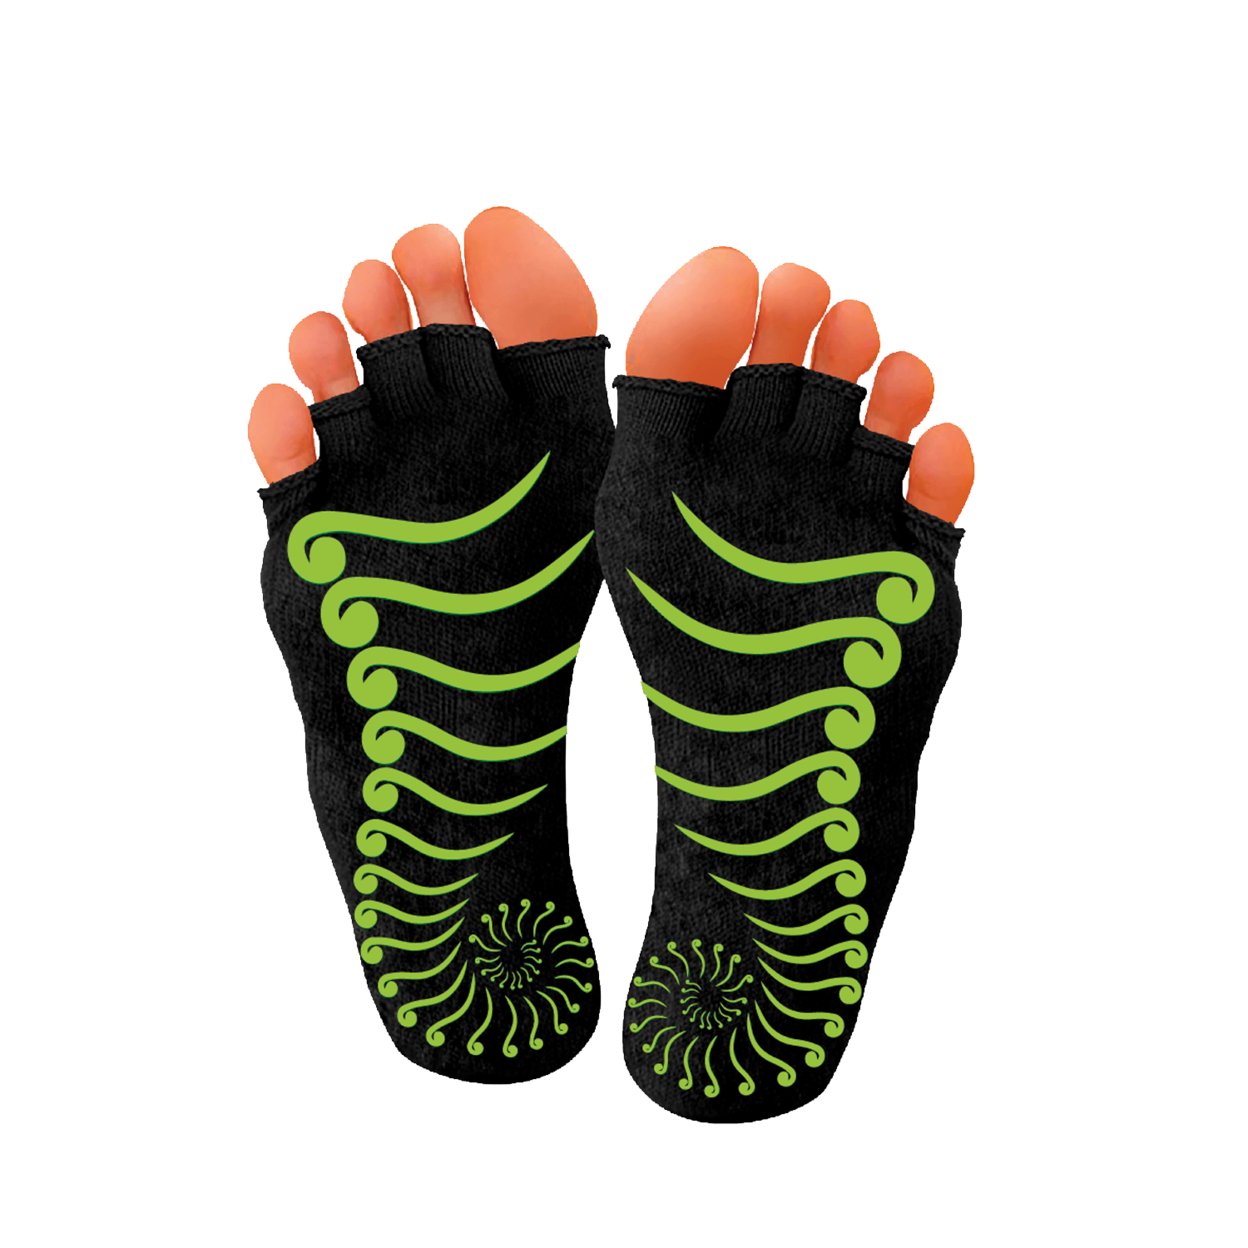 PBLX Non-Slip Yoga Socks No Toe, Small